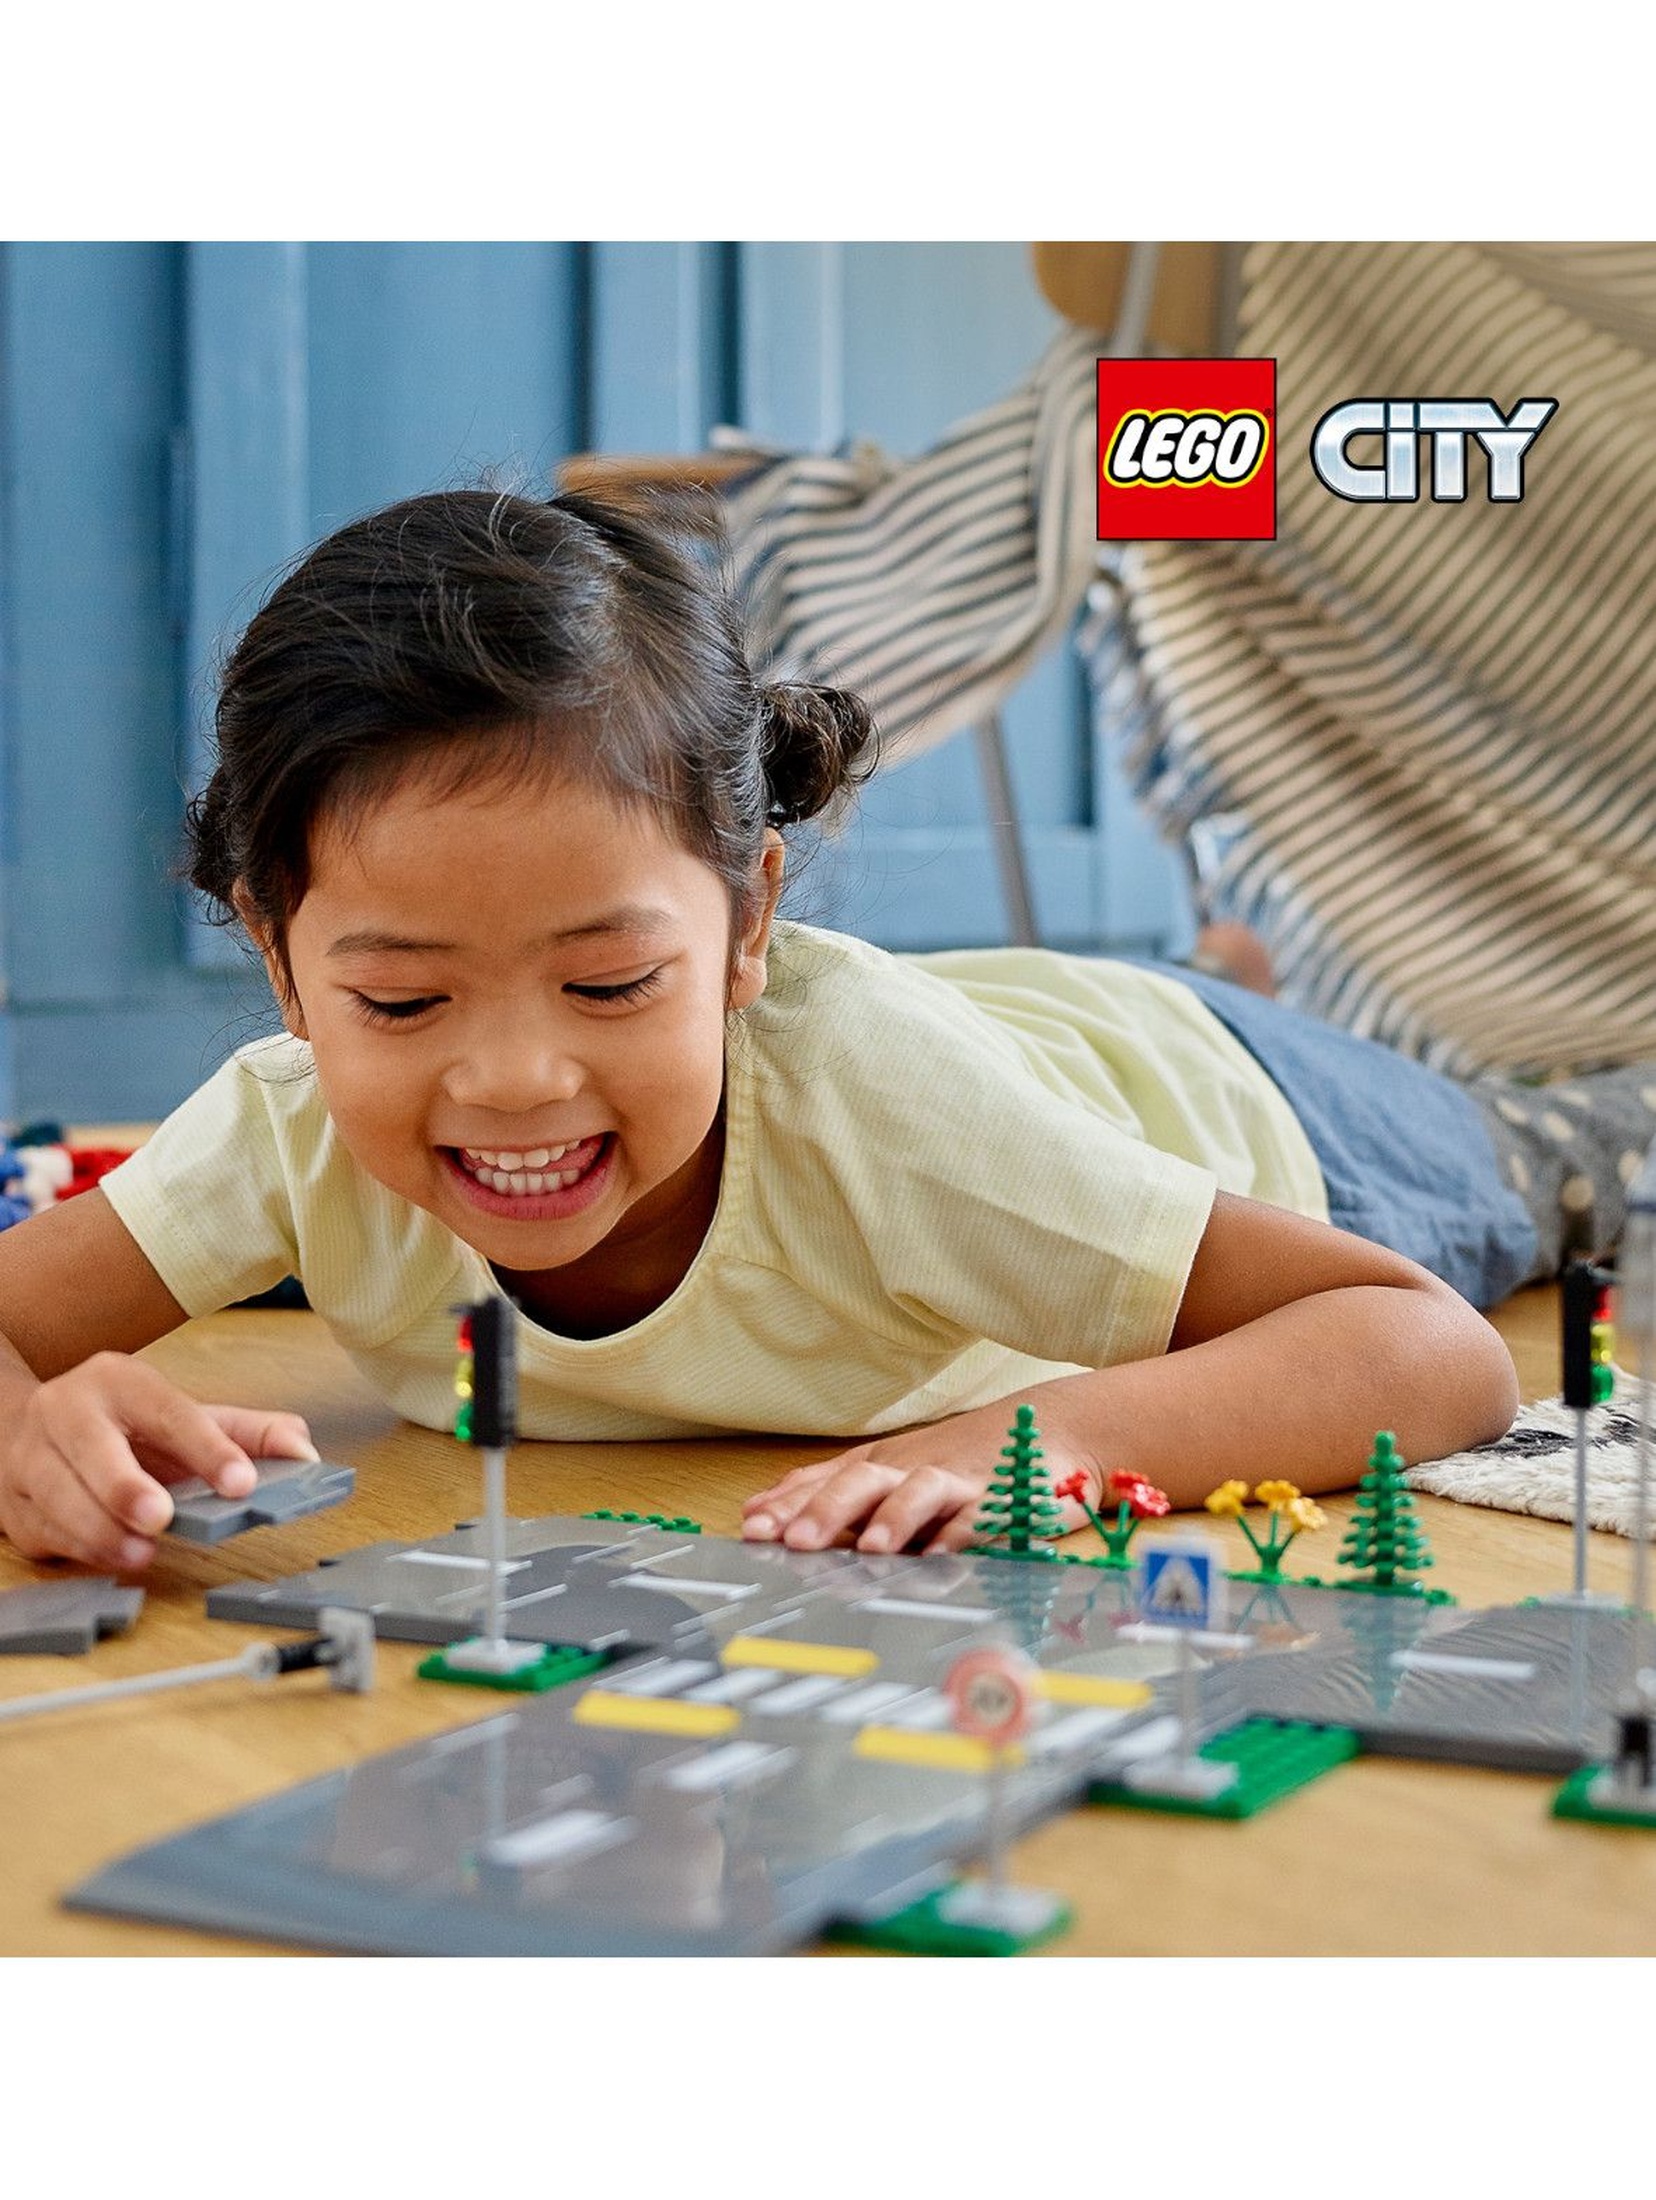 LEGO City 60304 - Płyty drogowe - 112el - wiek 5+